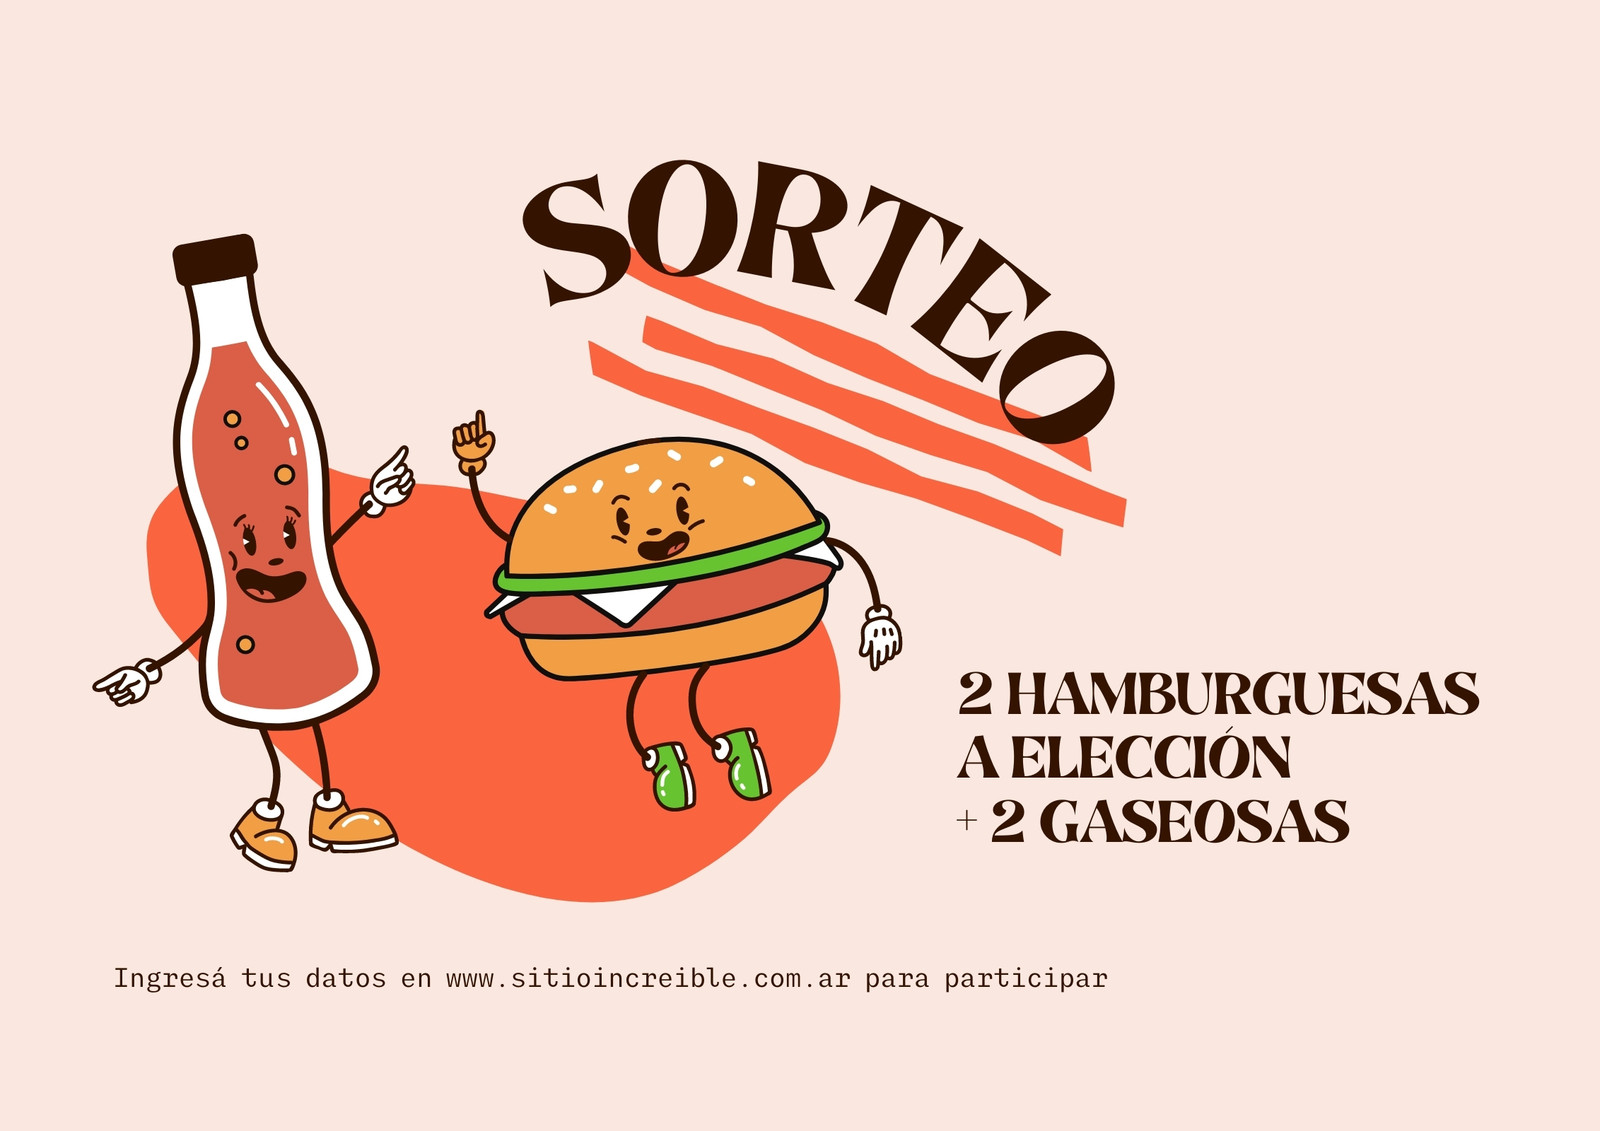 Flyer de diseño playful sobre anuncio de sorteo de hamburguesas + gaseosas, color naranja claro y naranja fuerte con hamburguesa y gaseosa ilustradas